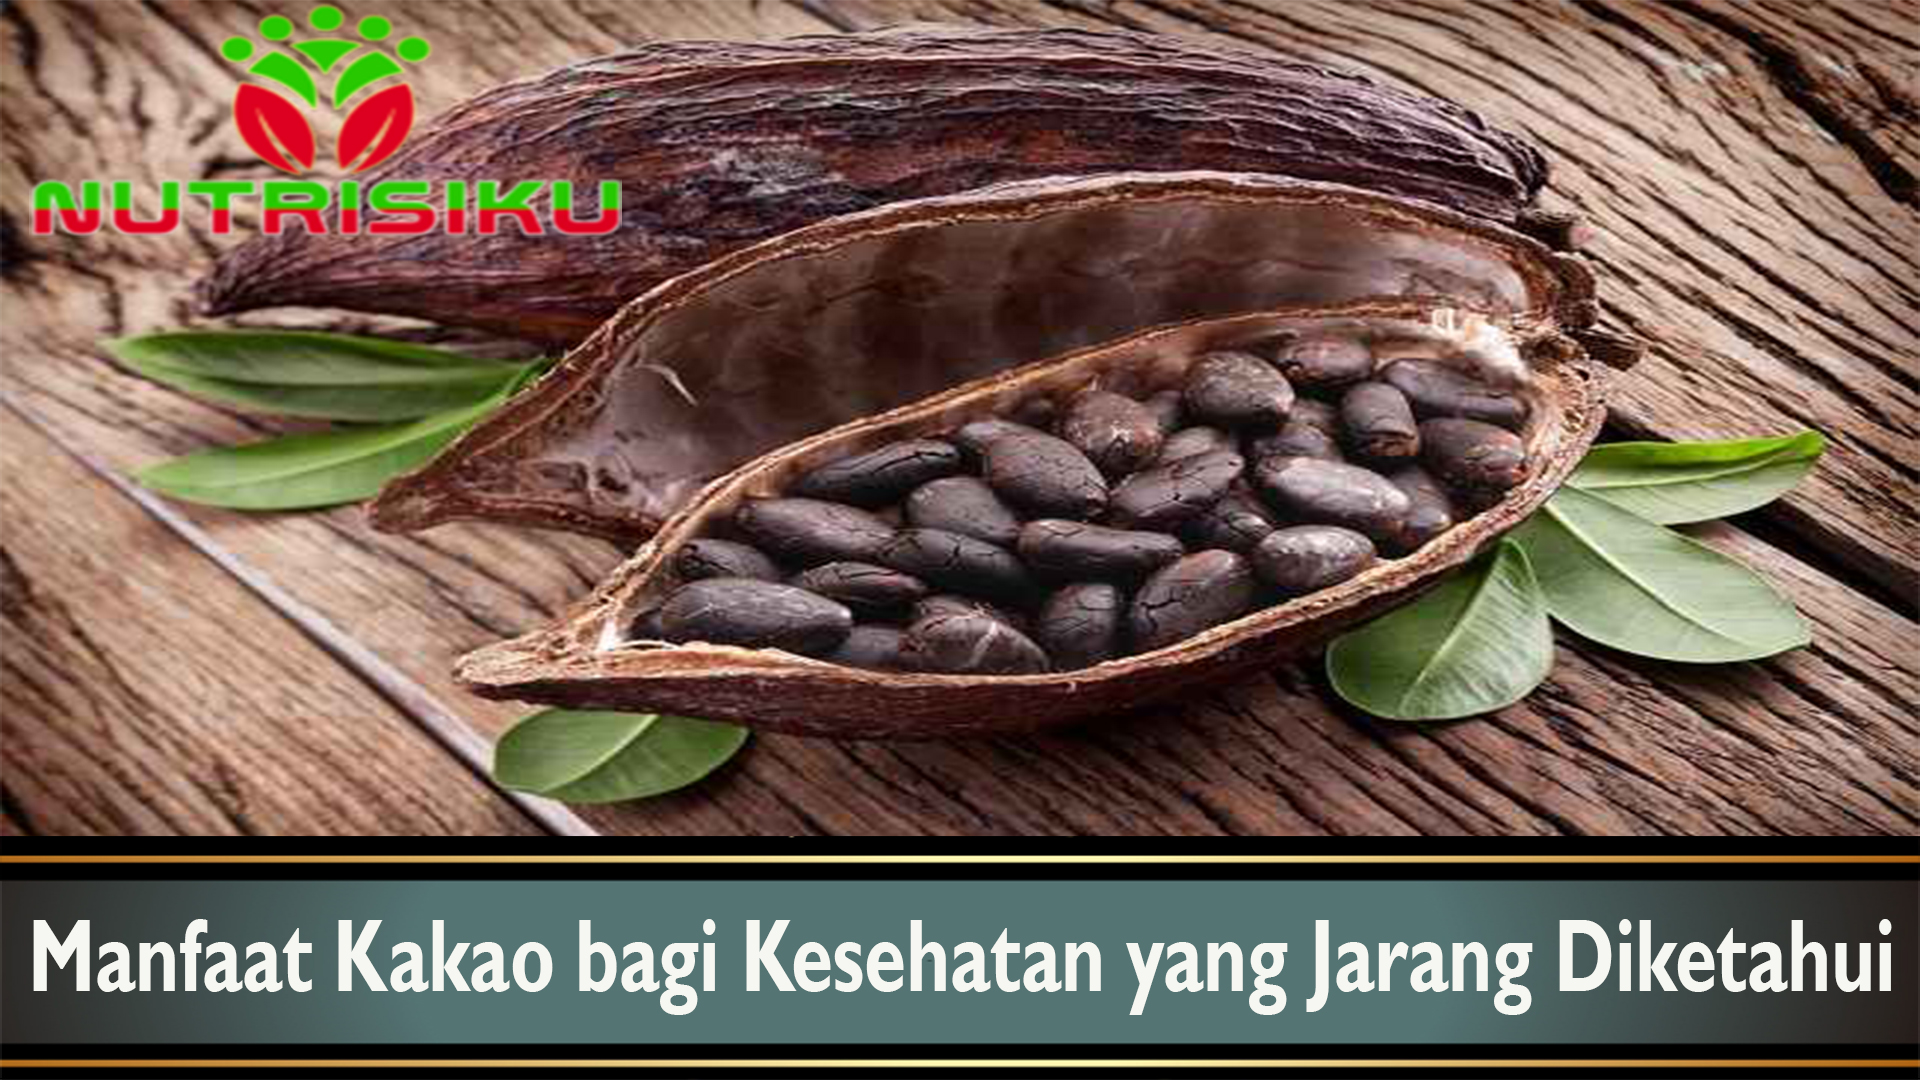 Manfaat Kakao bagi Kesehatan yang Jarang Diketahui